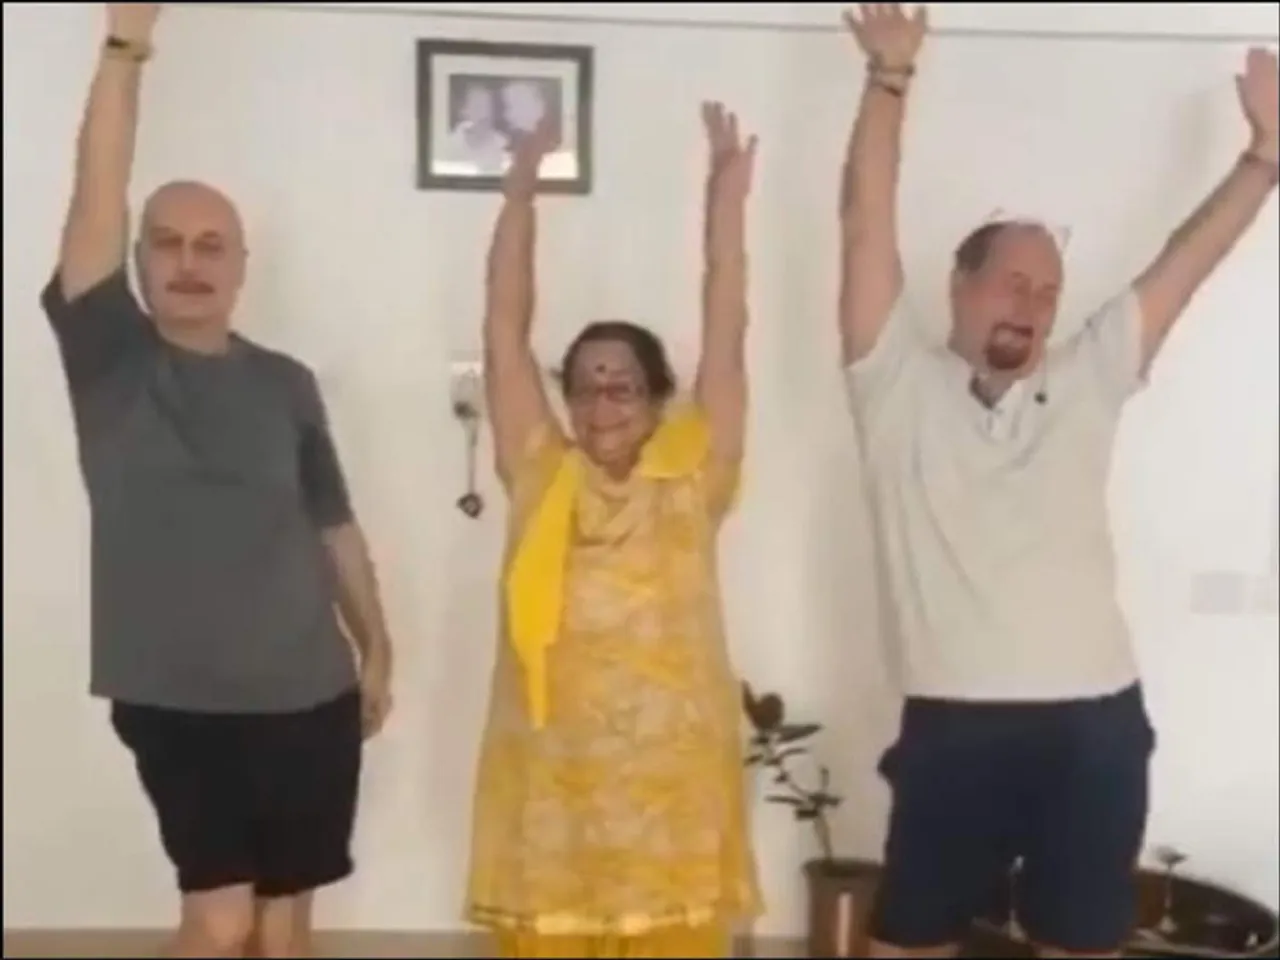 Video: अनुपम खेर ने मां के साथ किया डांस, कहा- ऐसी चीजें रोज देखने को नहीं मिलती